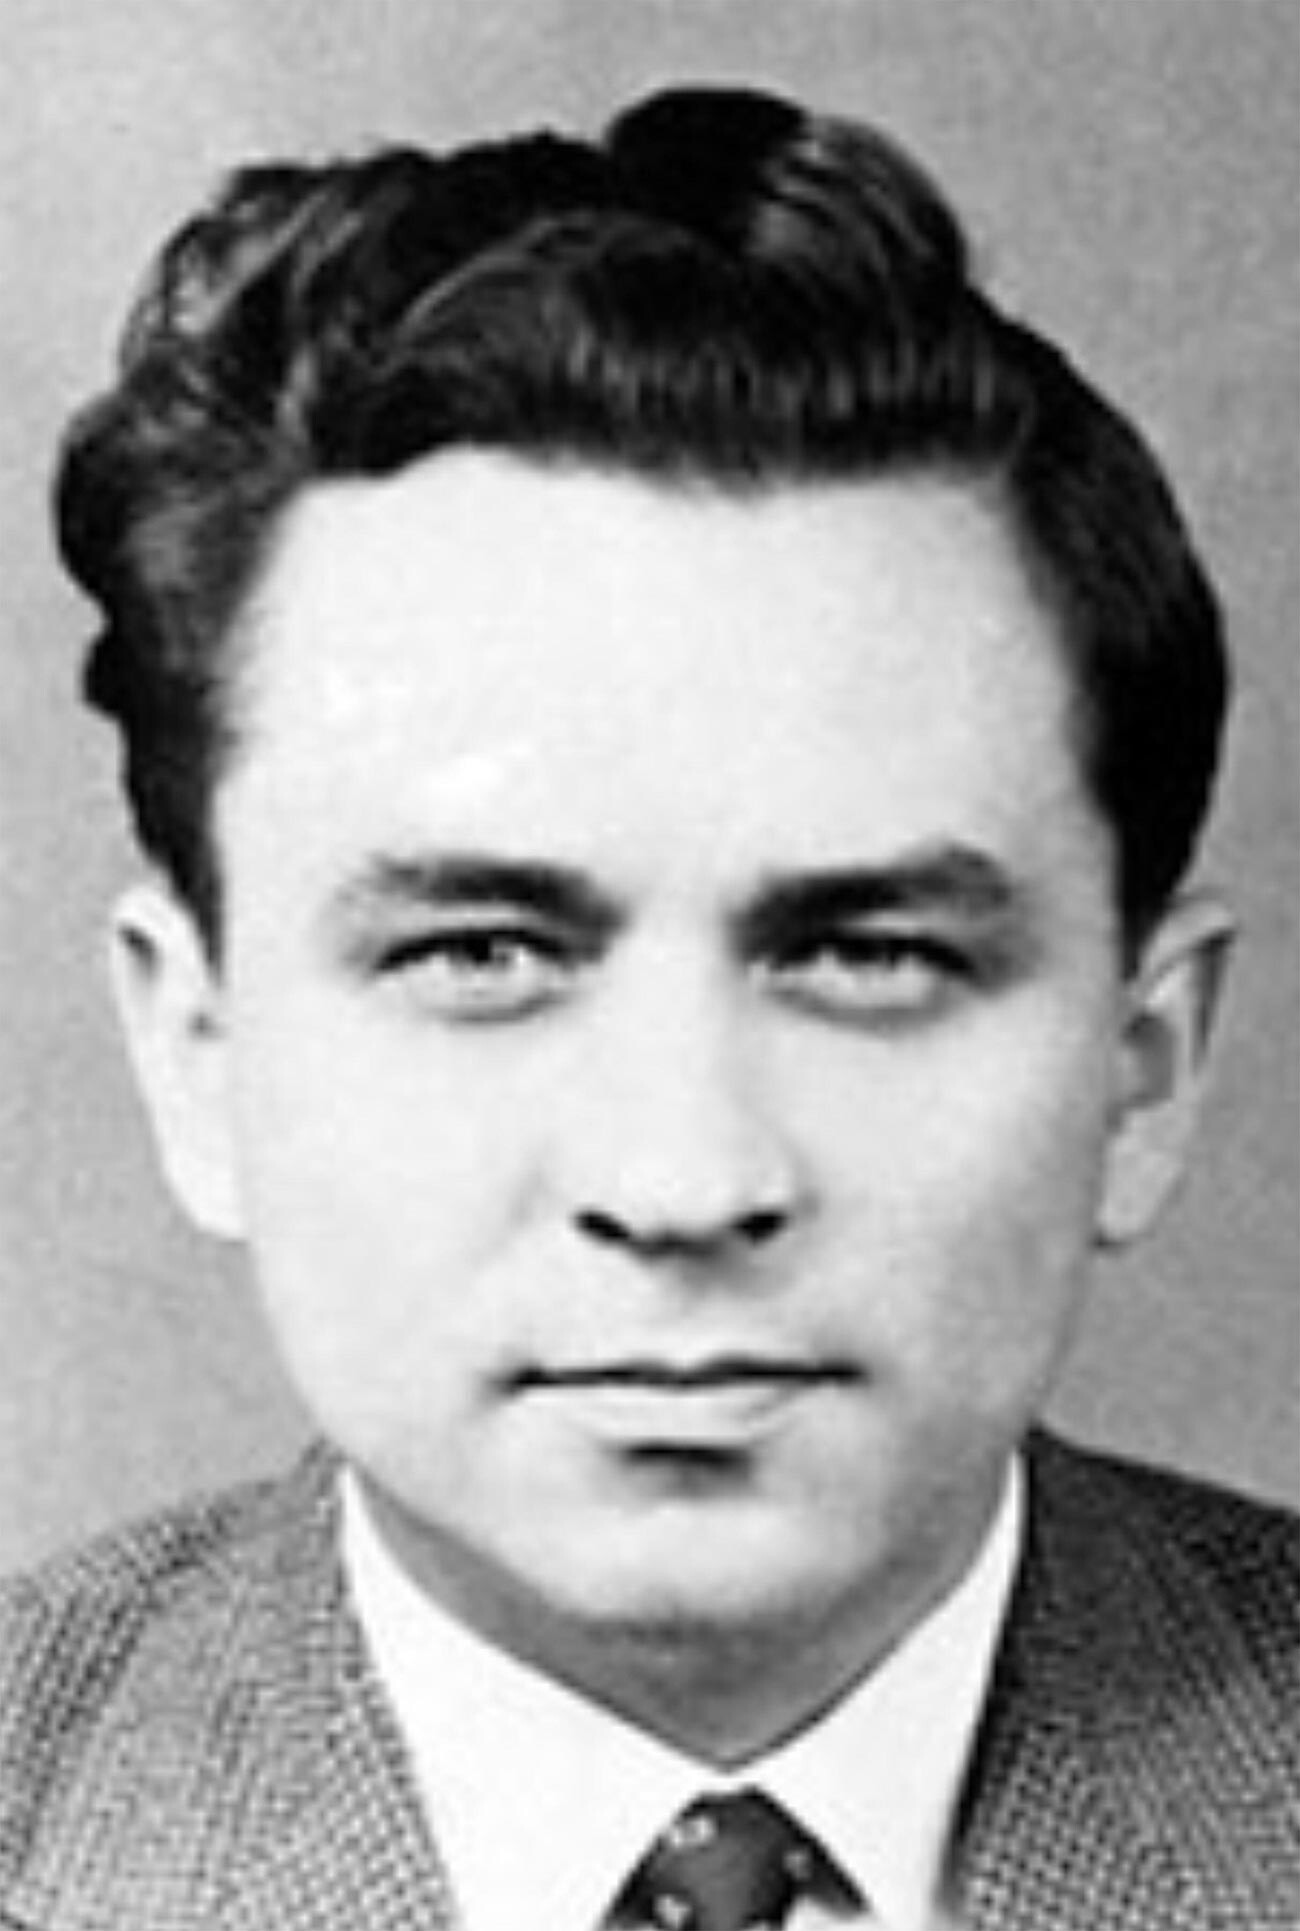 Molody (1922-1970), Soviet Intelligence Officer.